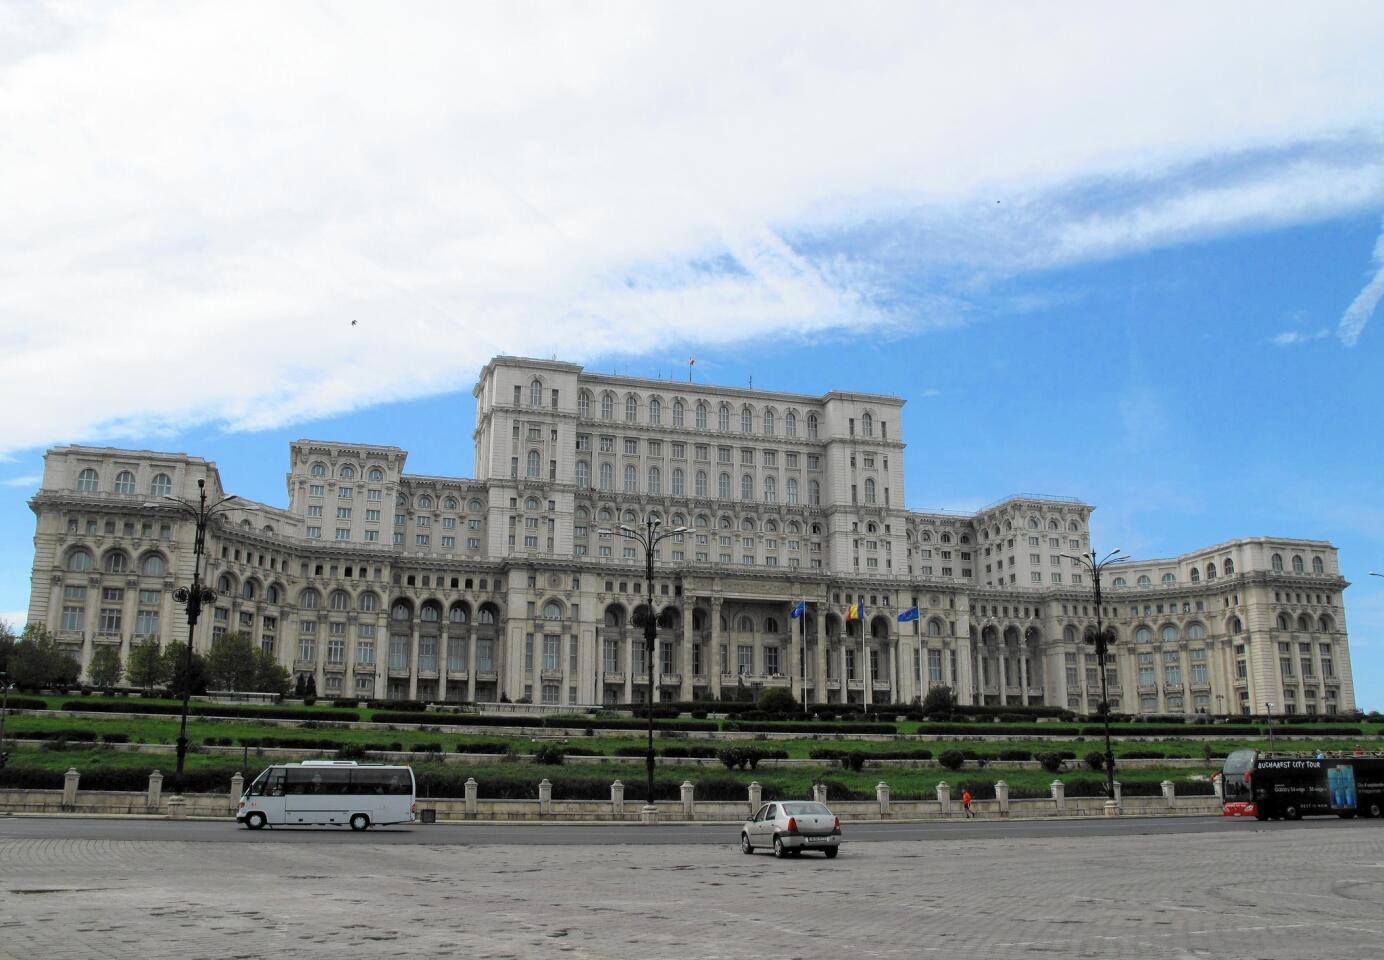 Parliament in Bucharest